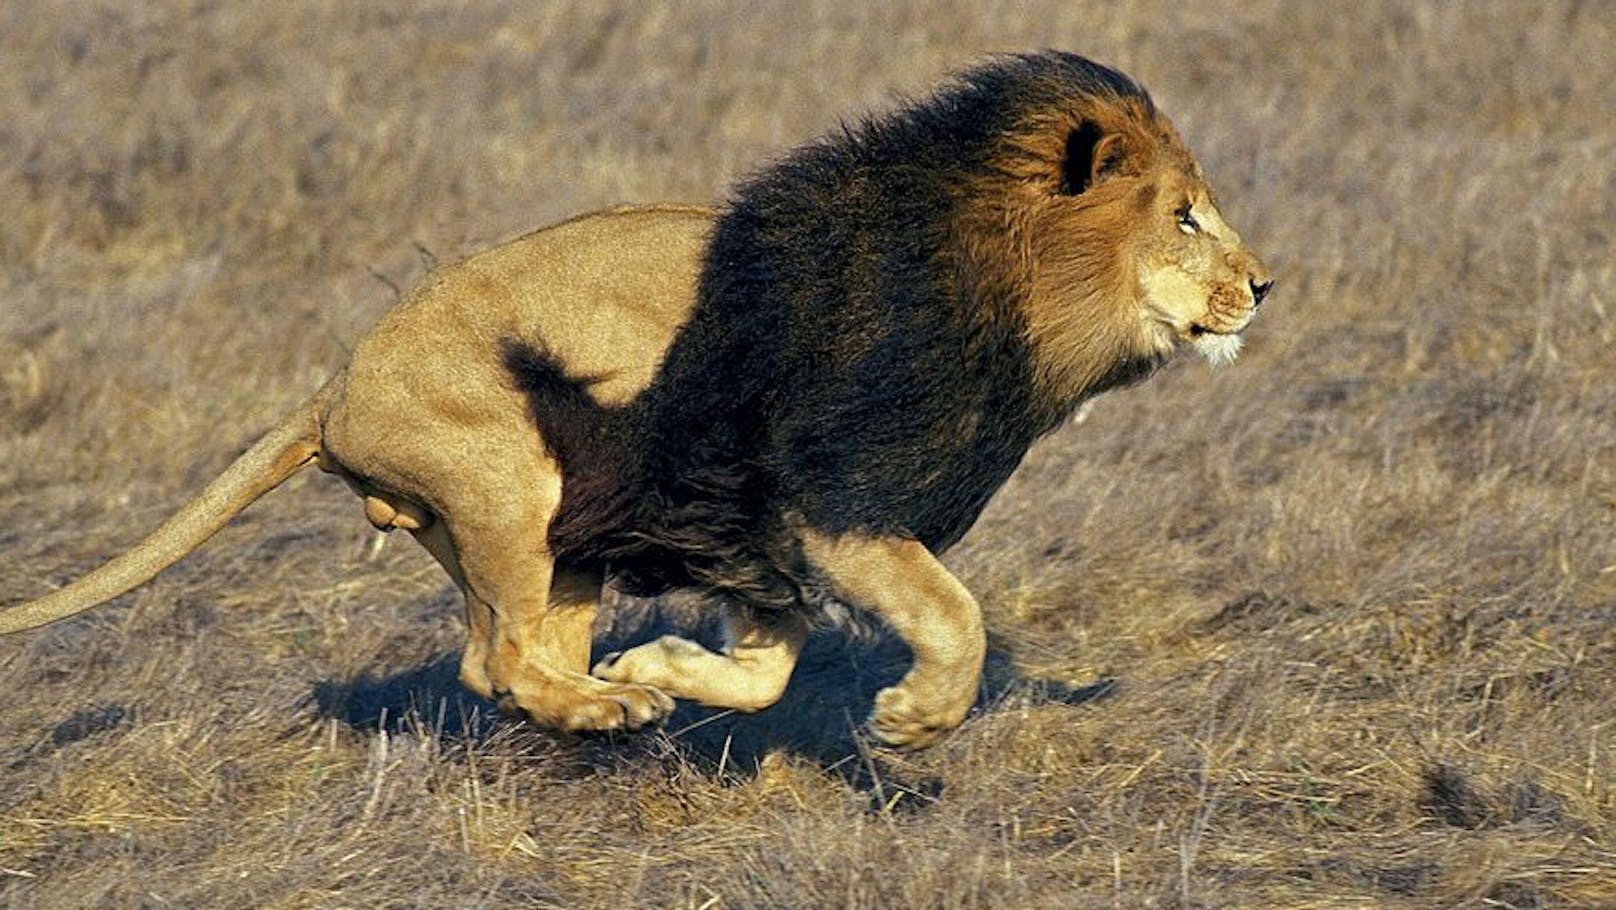 Er pflegte ihn 9 Jahre: Zoowärter von Löwe zerfleischt